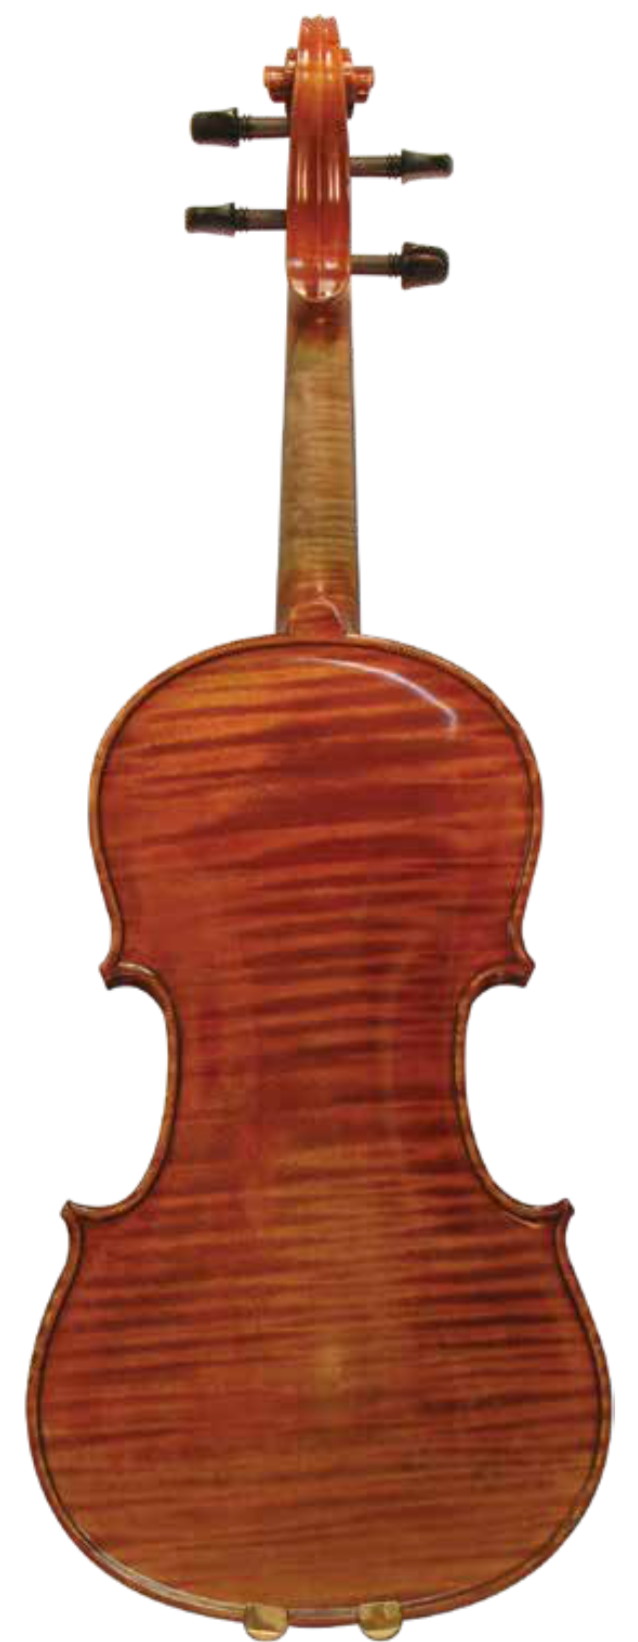 Maple Leaf Strings 